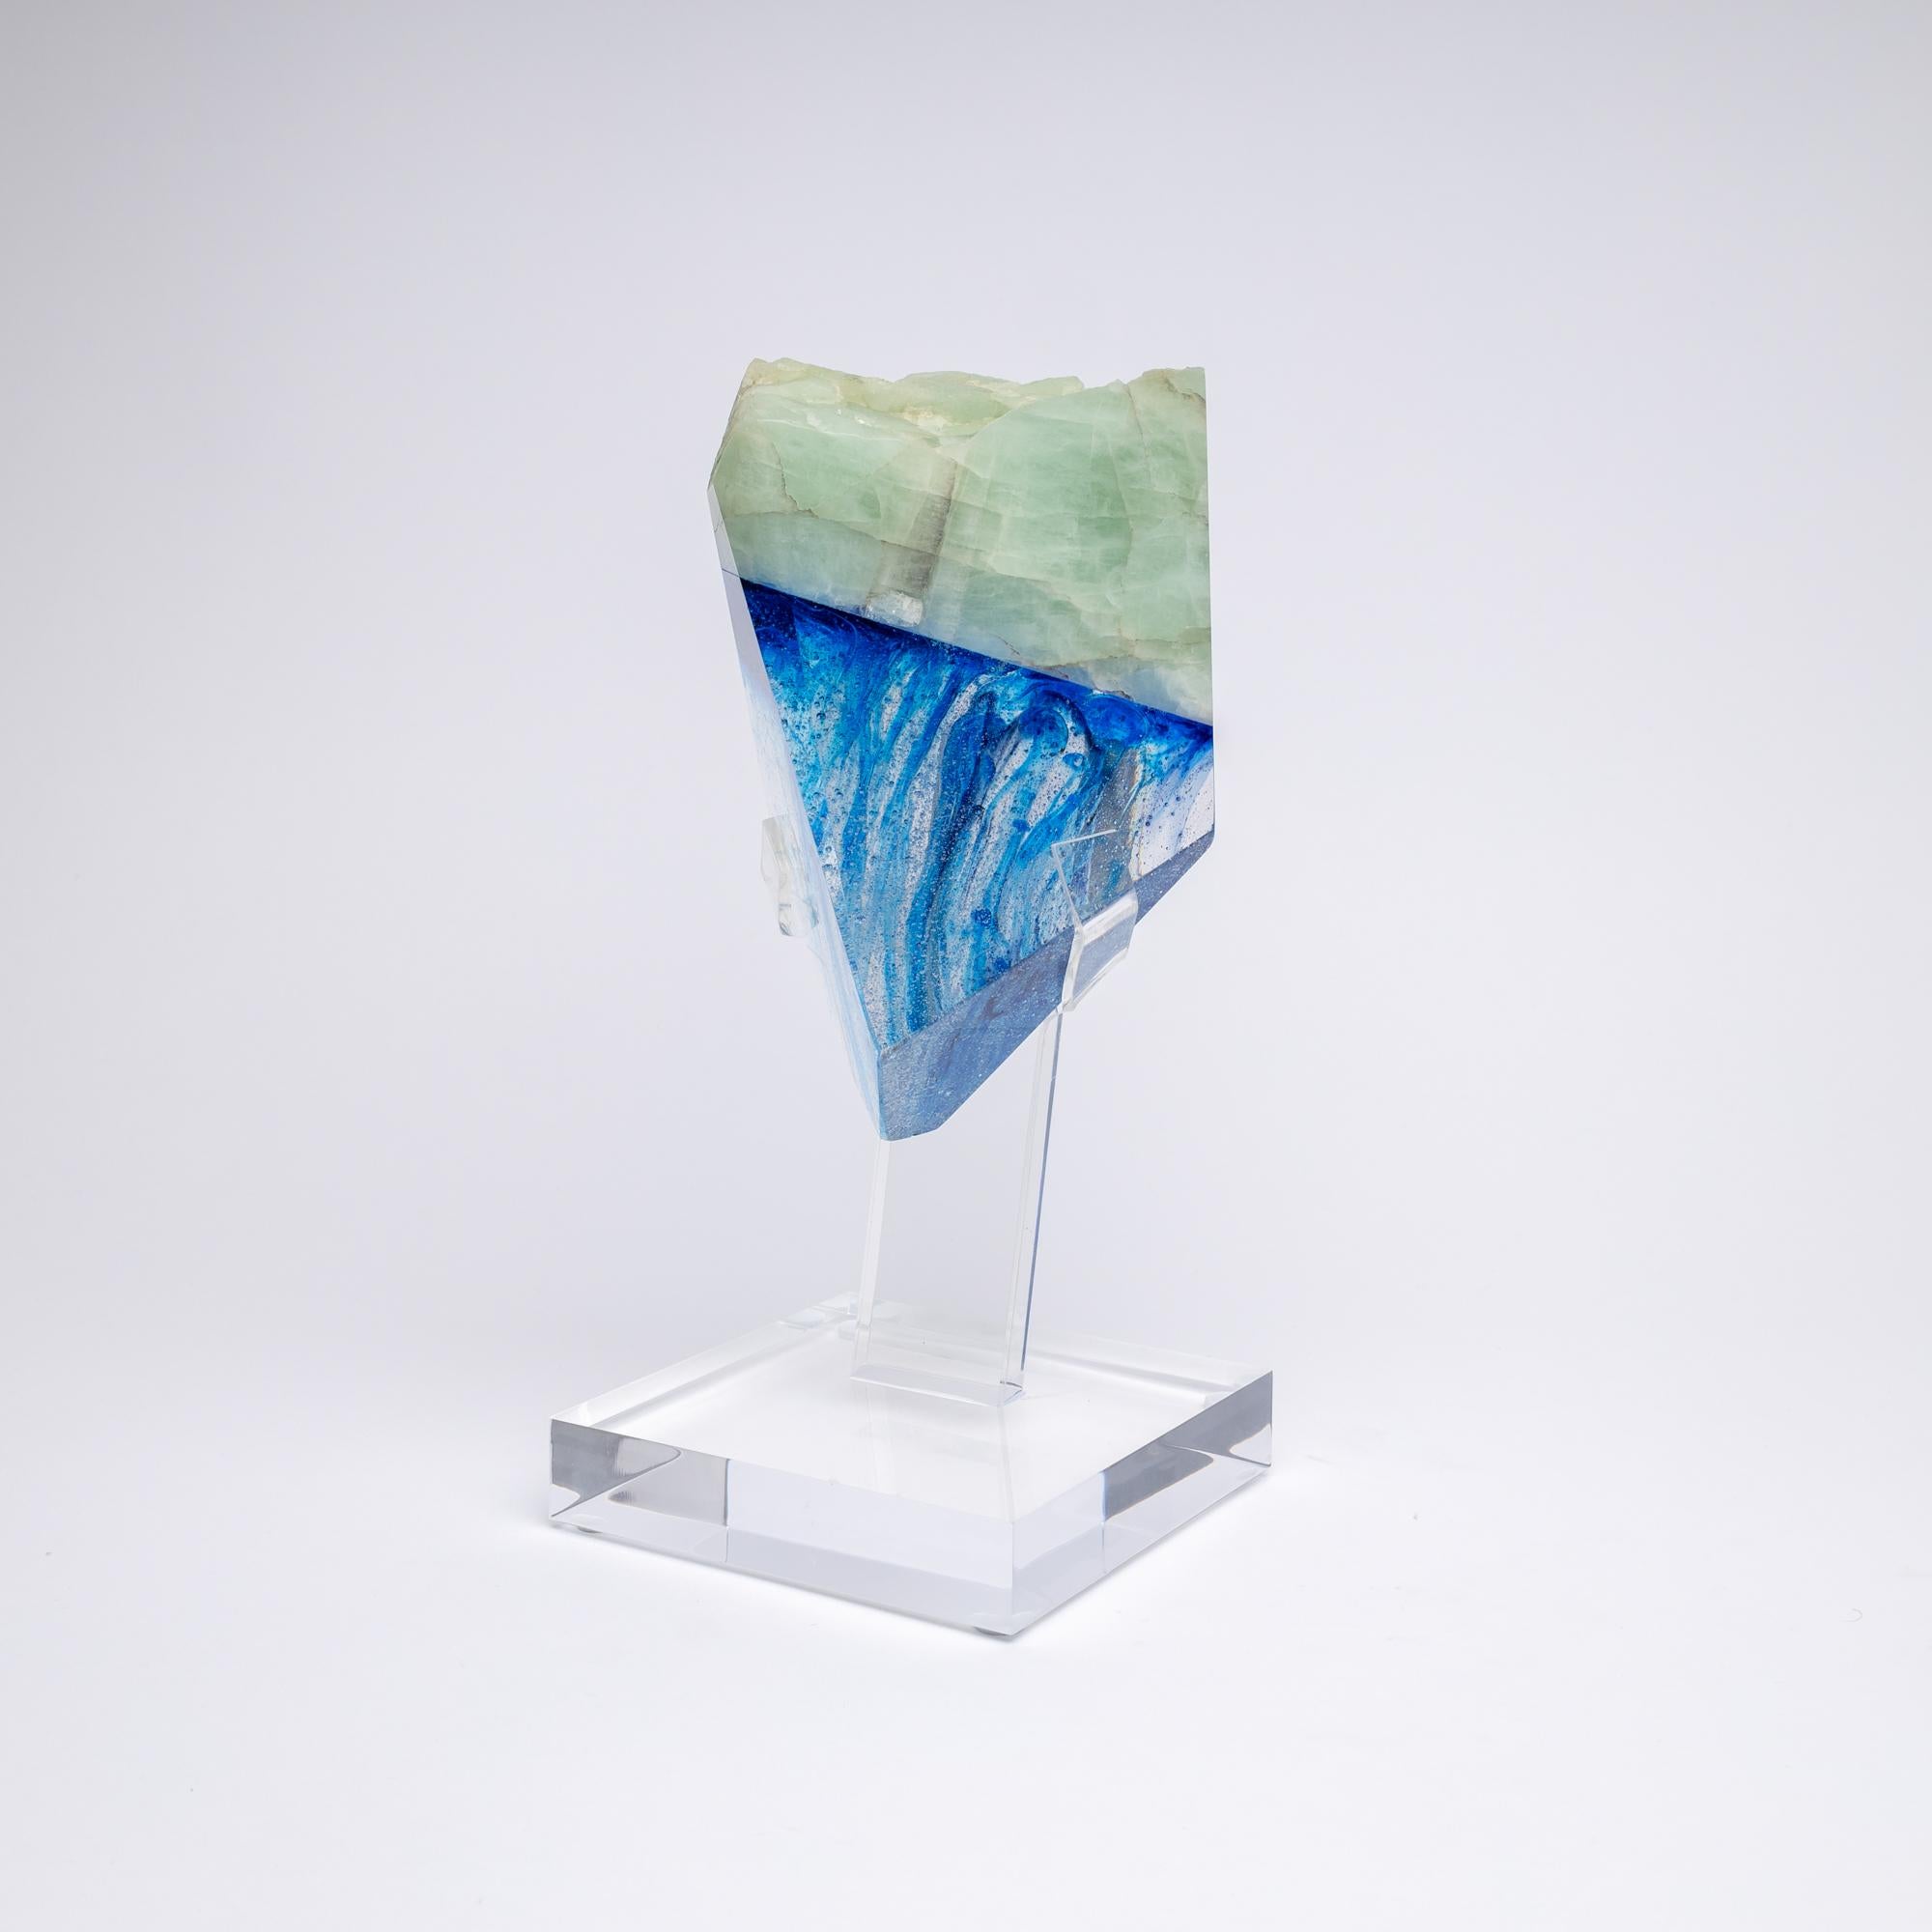 Maryne - brasilianische Glasskulptur mit Aquamarin und blauem Farbton aus der Kollektion TYME, eine Zusammenarbeit von Orfeo Quagliata und Ernesto Durán.

TYME-Kollektion 
Ein Tanz zwischen Reinheit und Detail bringt einzigartige Stücke hervor,